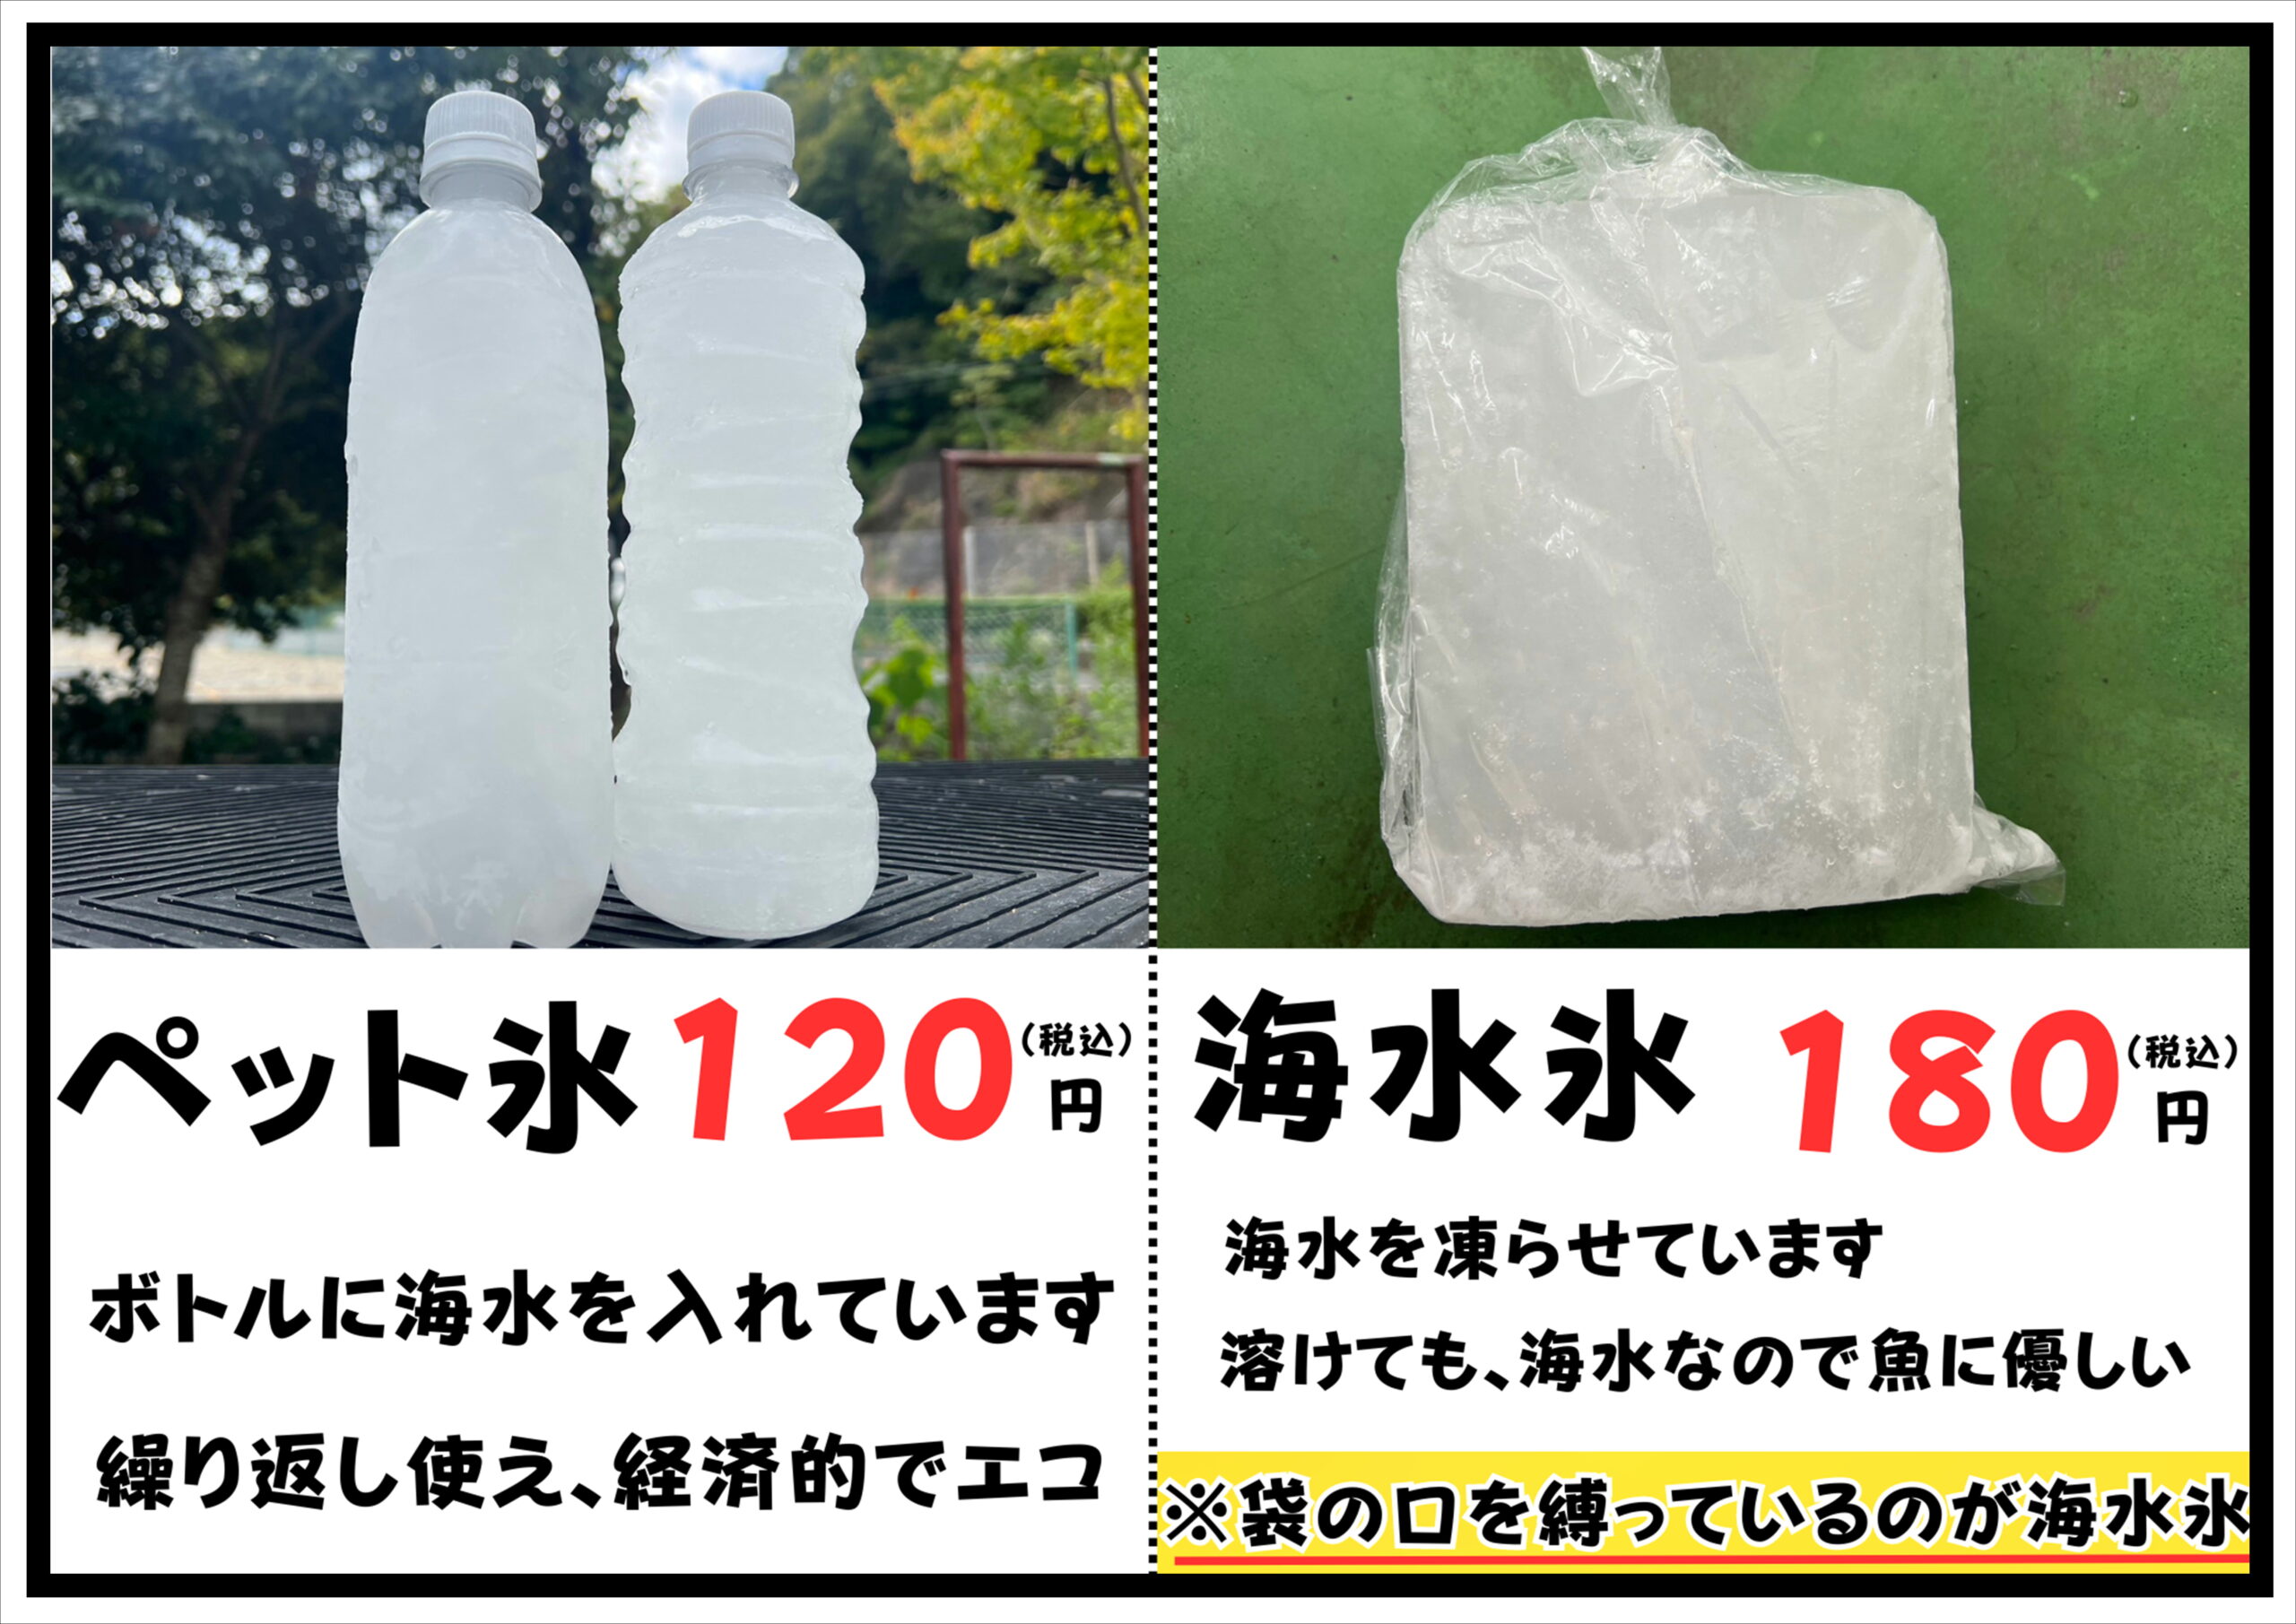 海水氷とペット氷は、共に海水を凍らせている。これは釣太郎オリジナル商品。